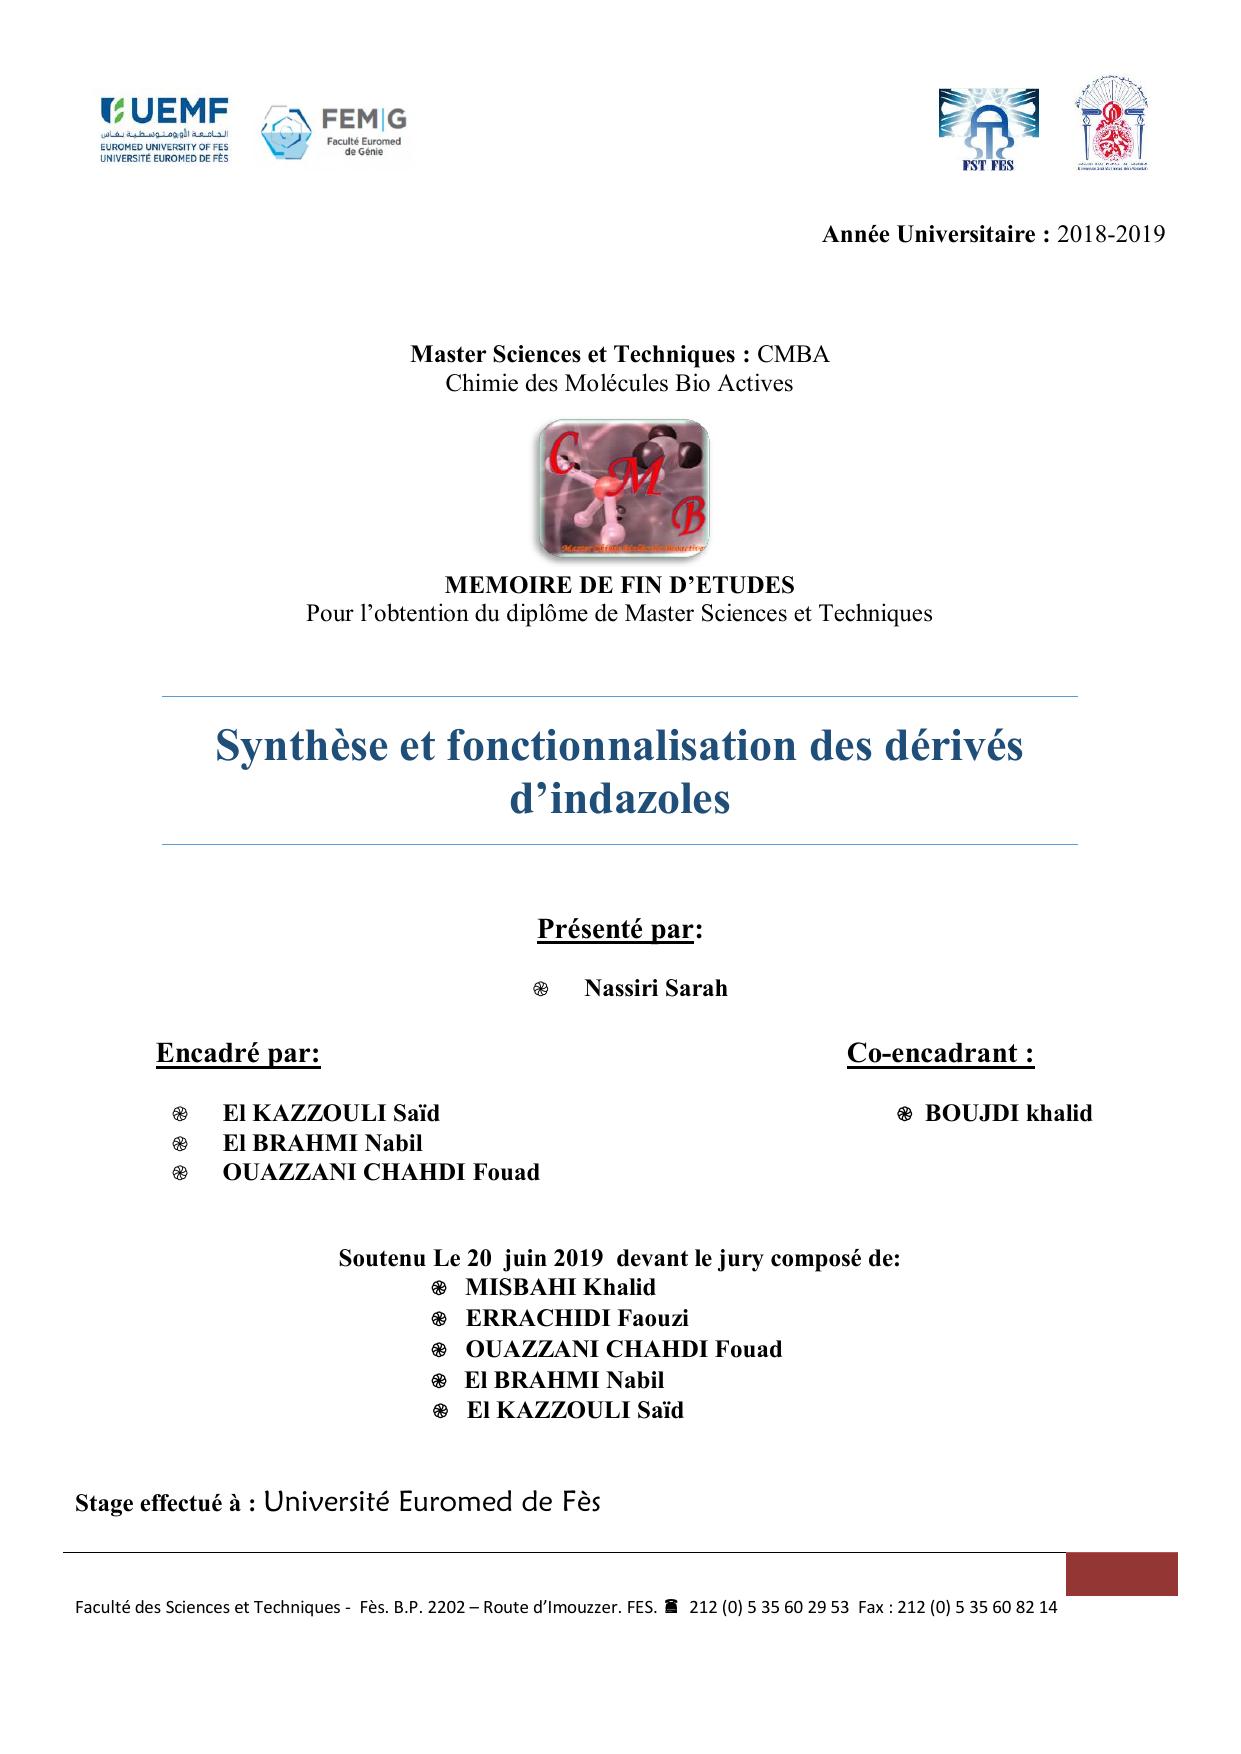 Synthèse et fonctionnalisation des dérivés d’indazoles